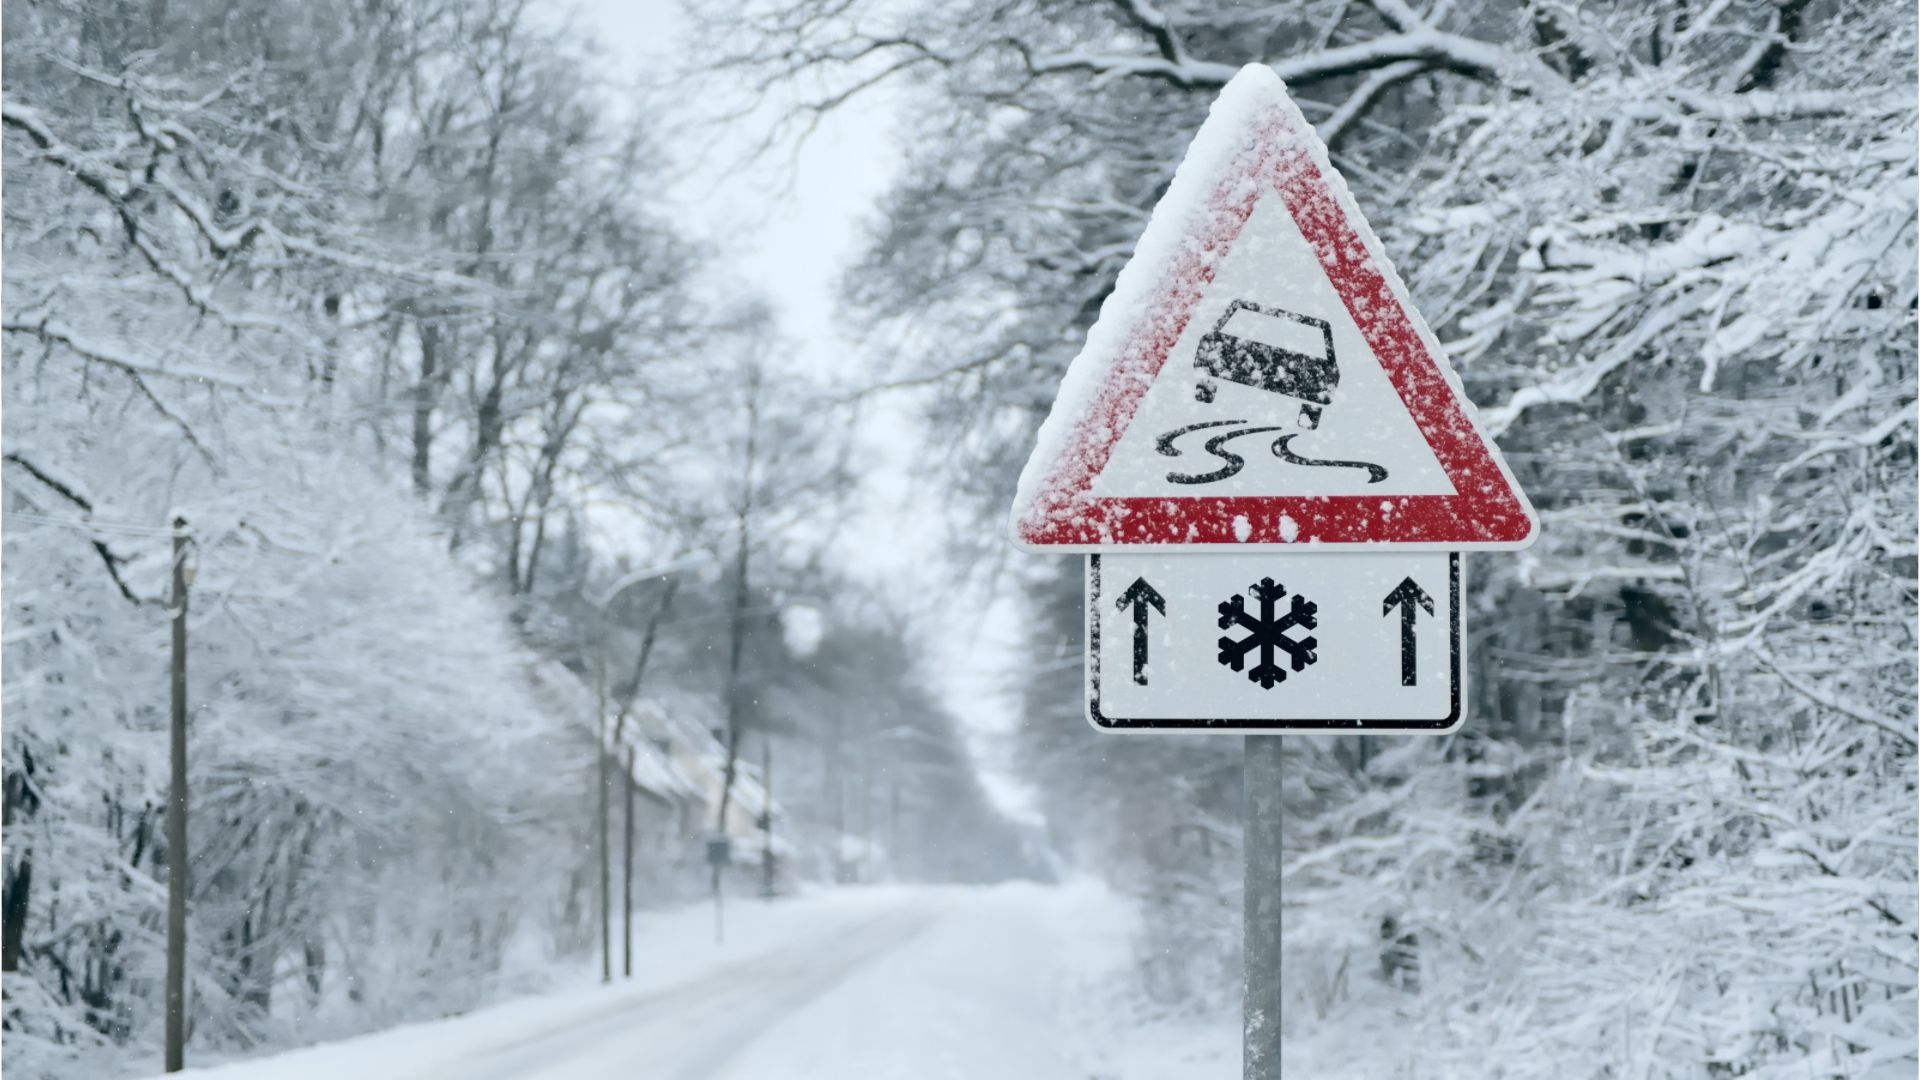 Fahren auf Eis und Schnee: Mit Vorsicht und viel Gefühl